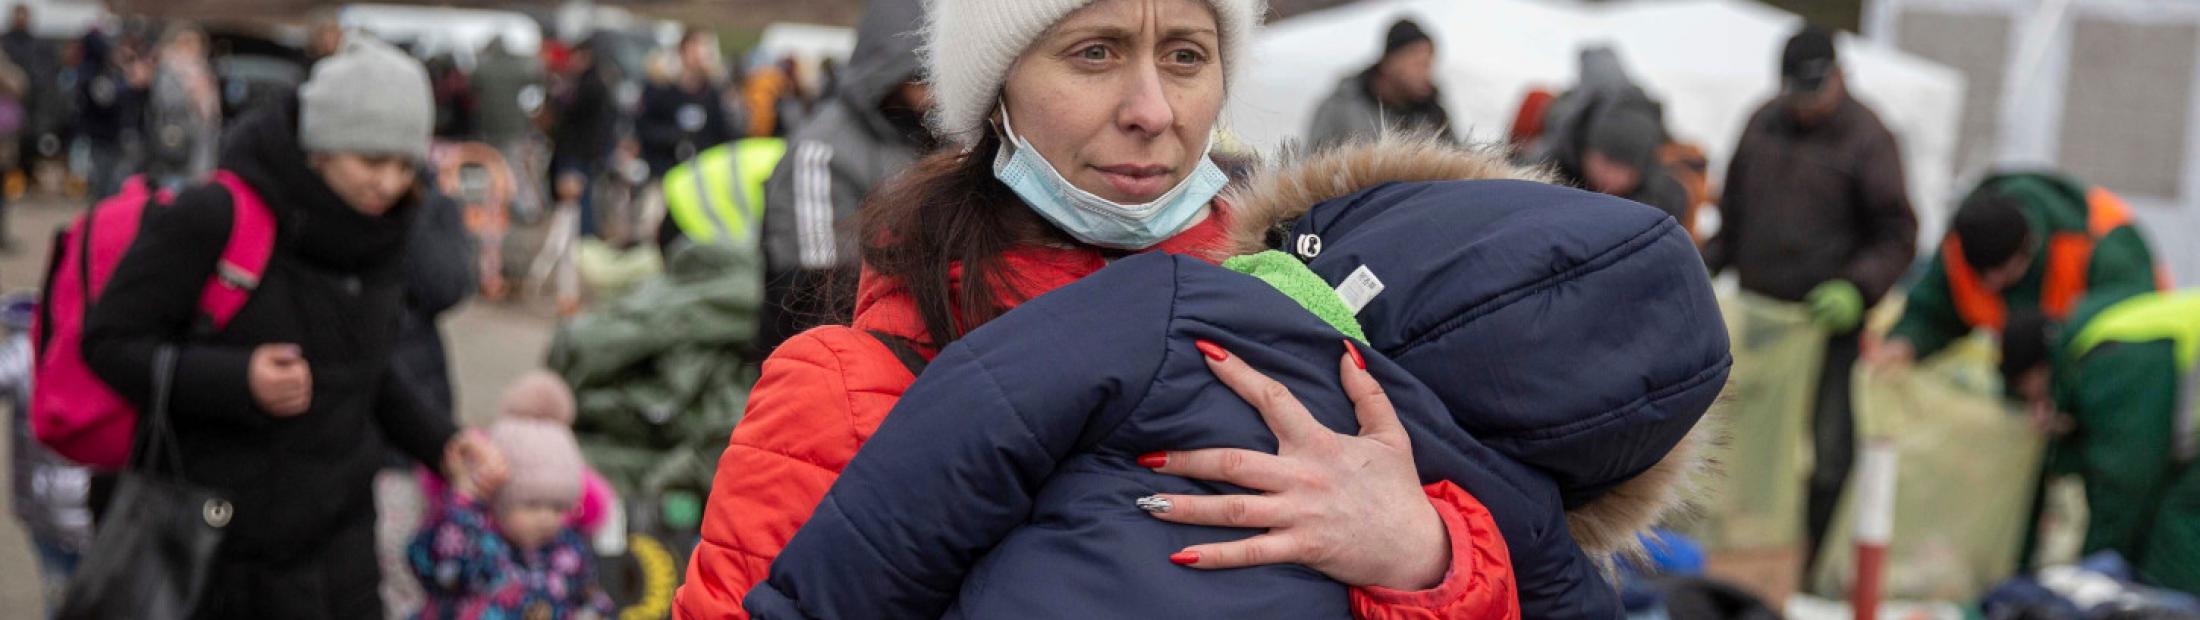 El éxodo de Ucrania: cientos de miles de refugiados y desplazados internos